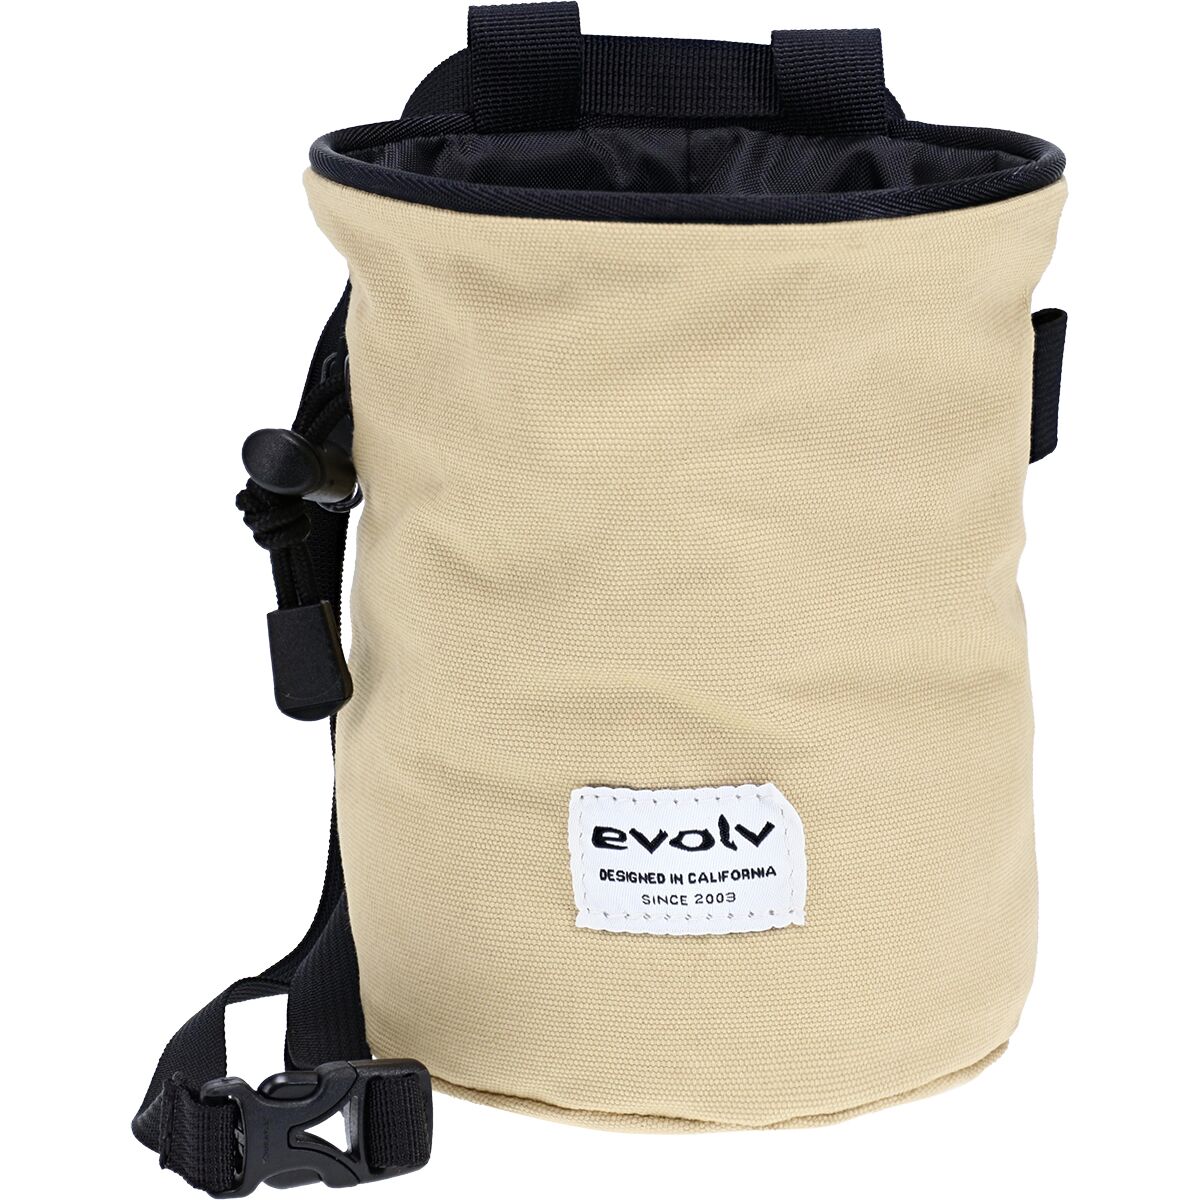 EVOLV Tote Bag